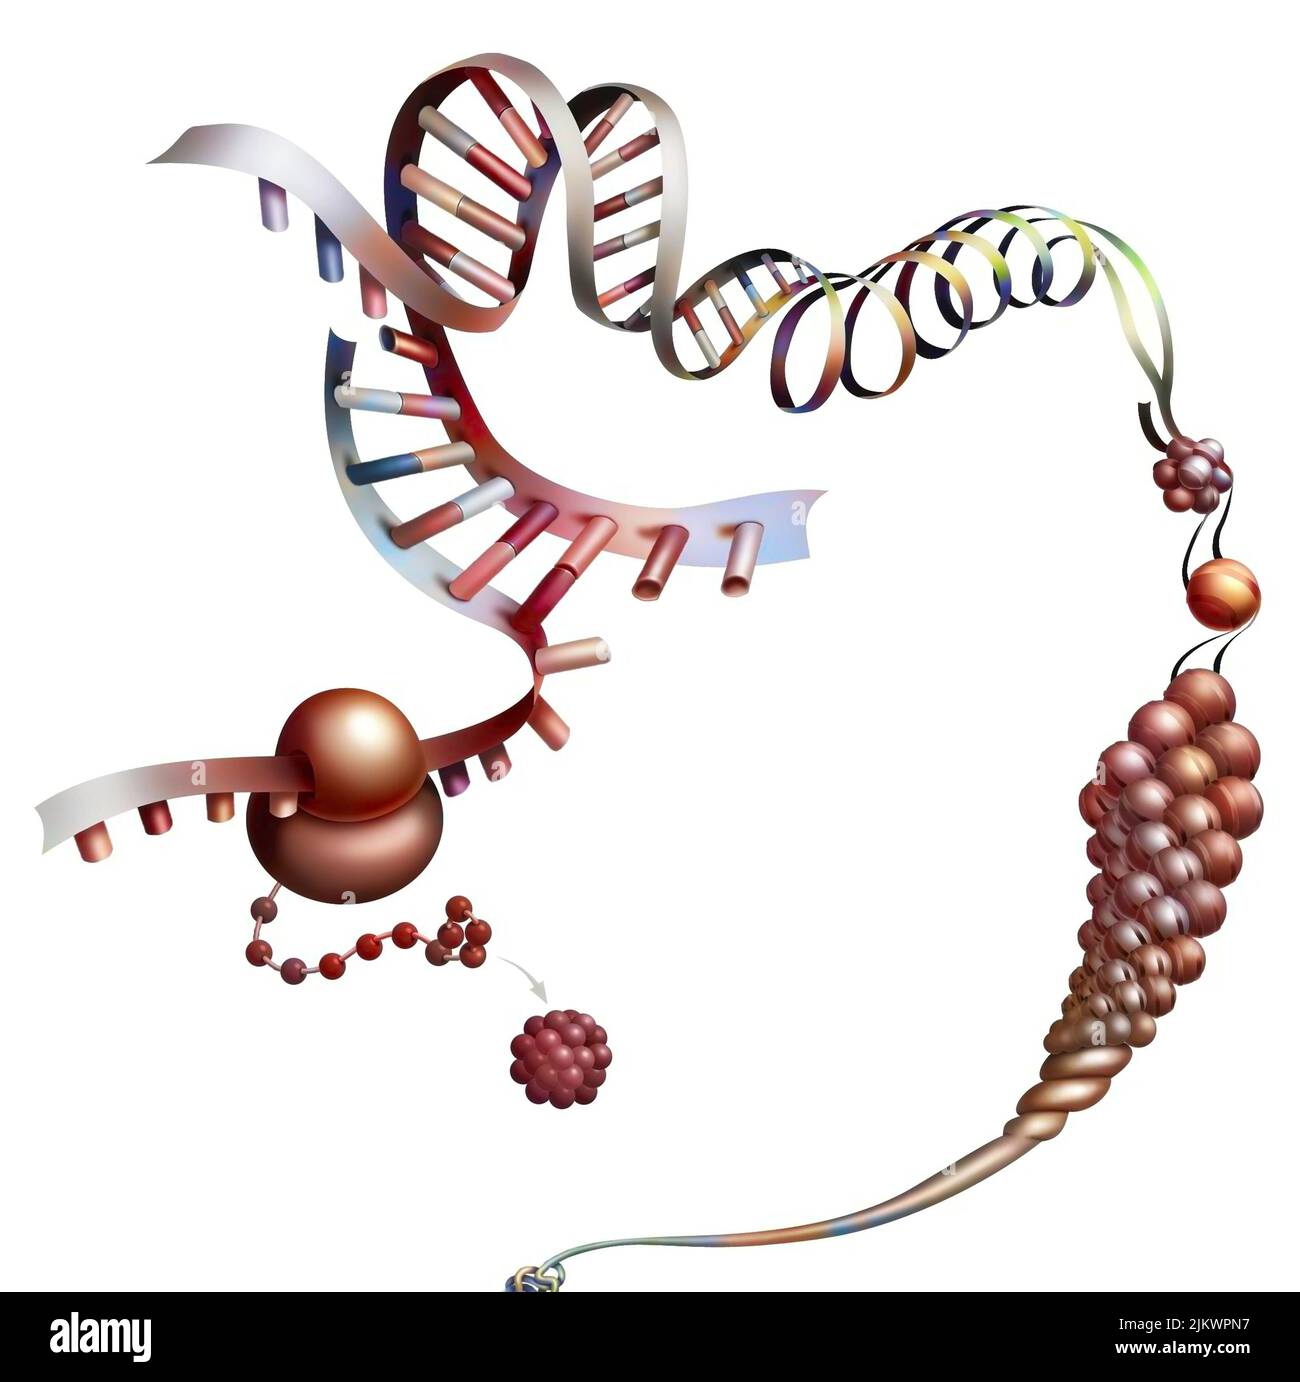 Dettaglio che rappresenta la sintesi di una proteina da RNA messaggero. Foto Stock